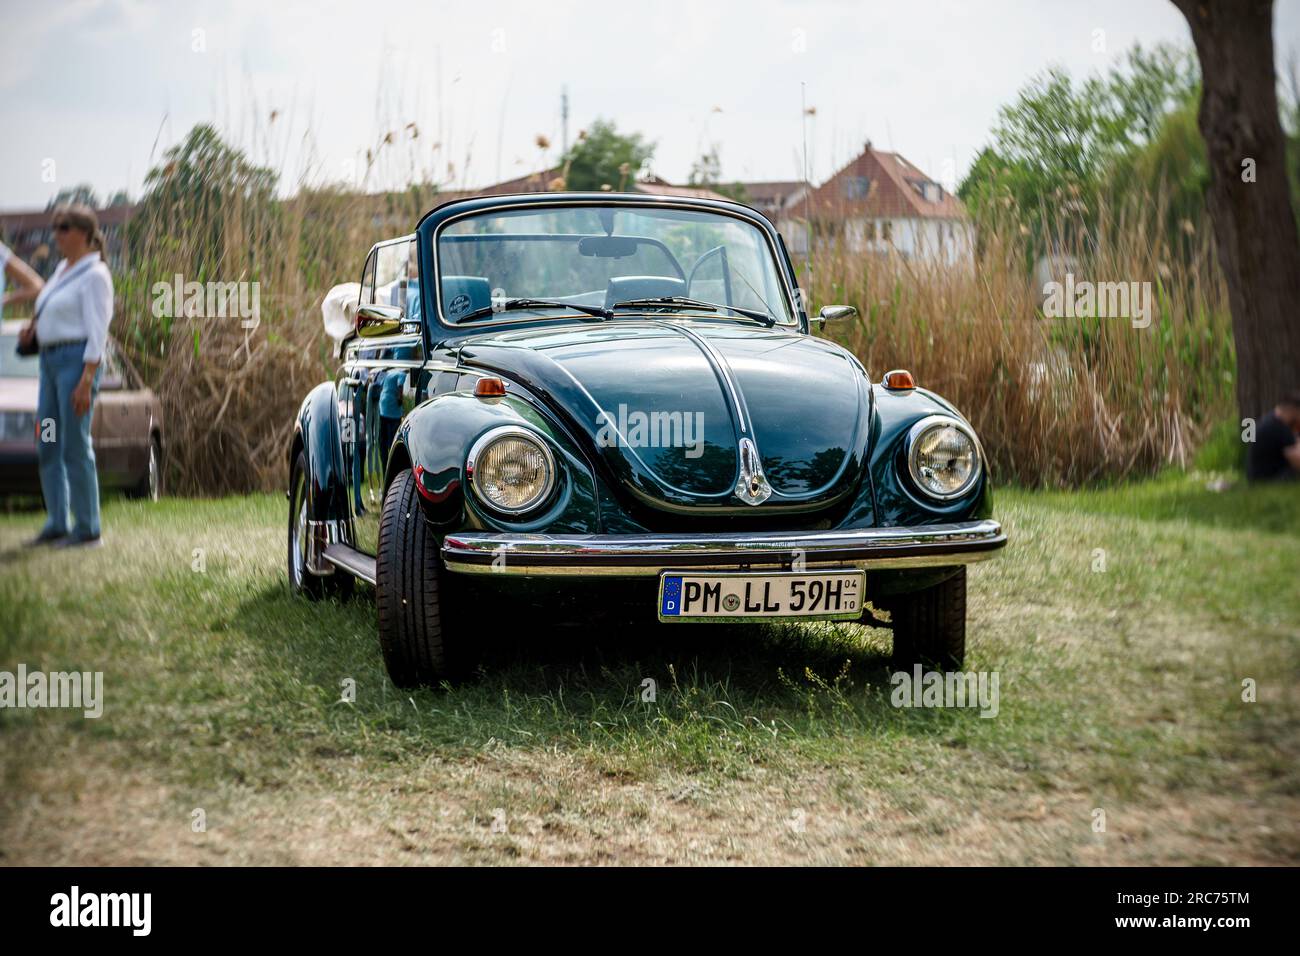 Künstlerische Illustration, Volkswagen vw beetle